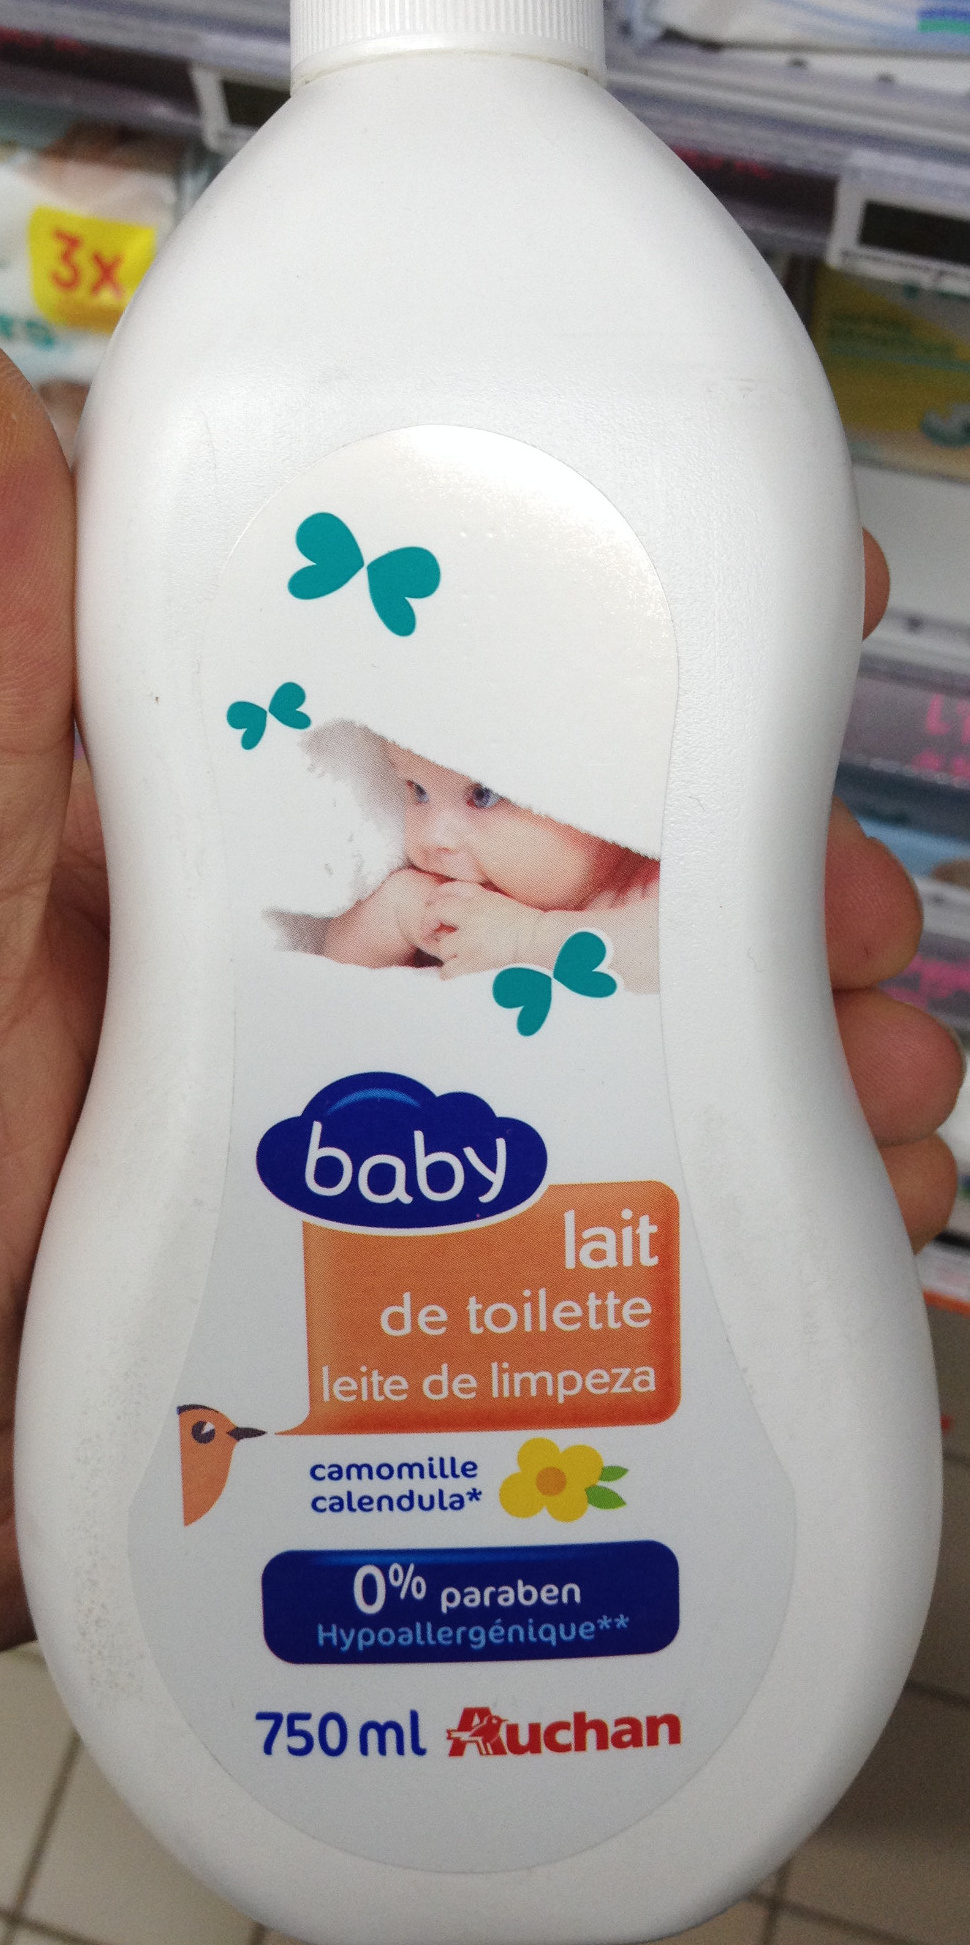 Lait de toilette baby camomille - Produto - fr